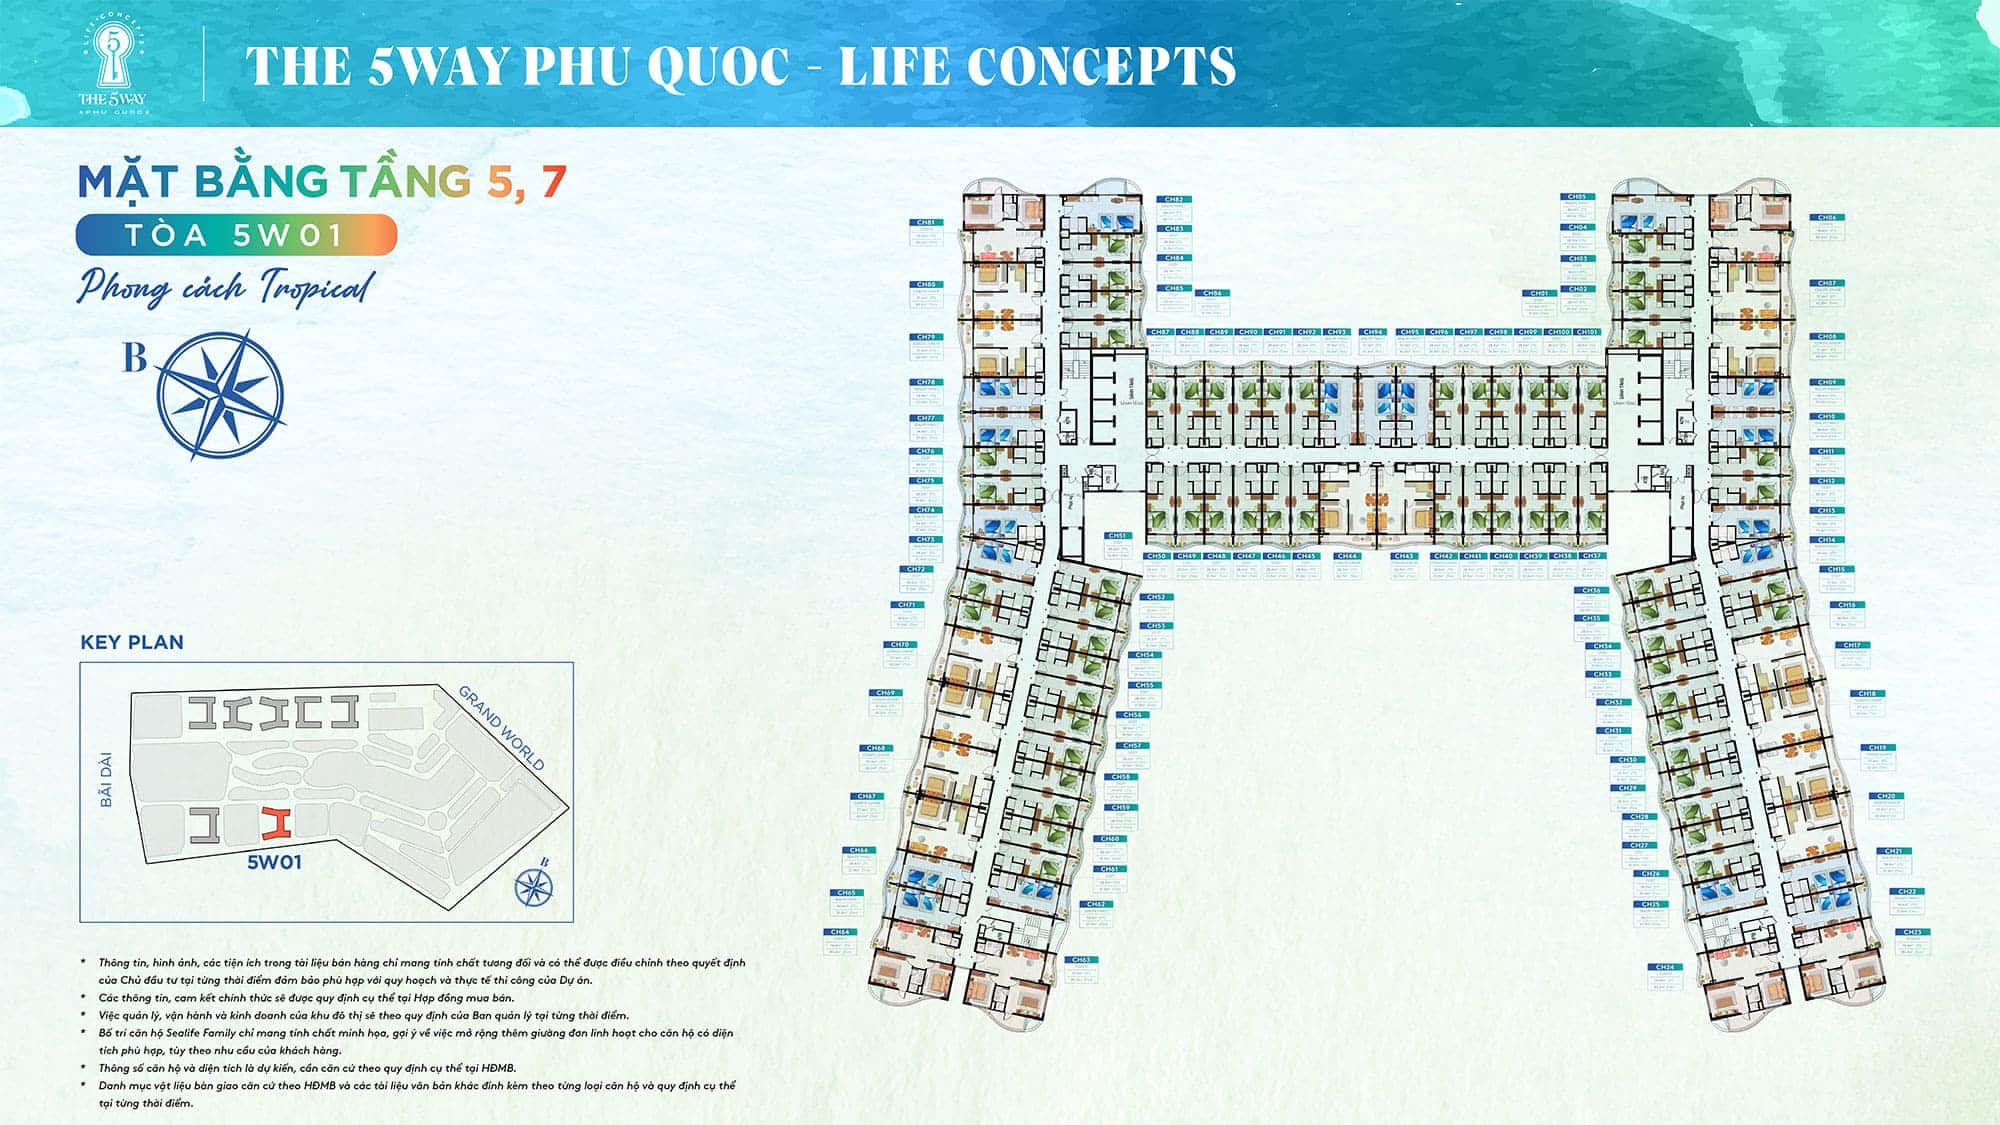 Mặt bằng Tầng 5, Tầng 7, Tòa 5W01 phong cách Tropical thuộc dự án The 5Way - Life Concepts.